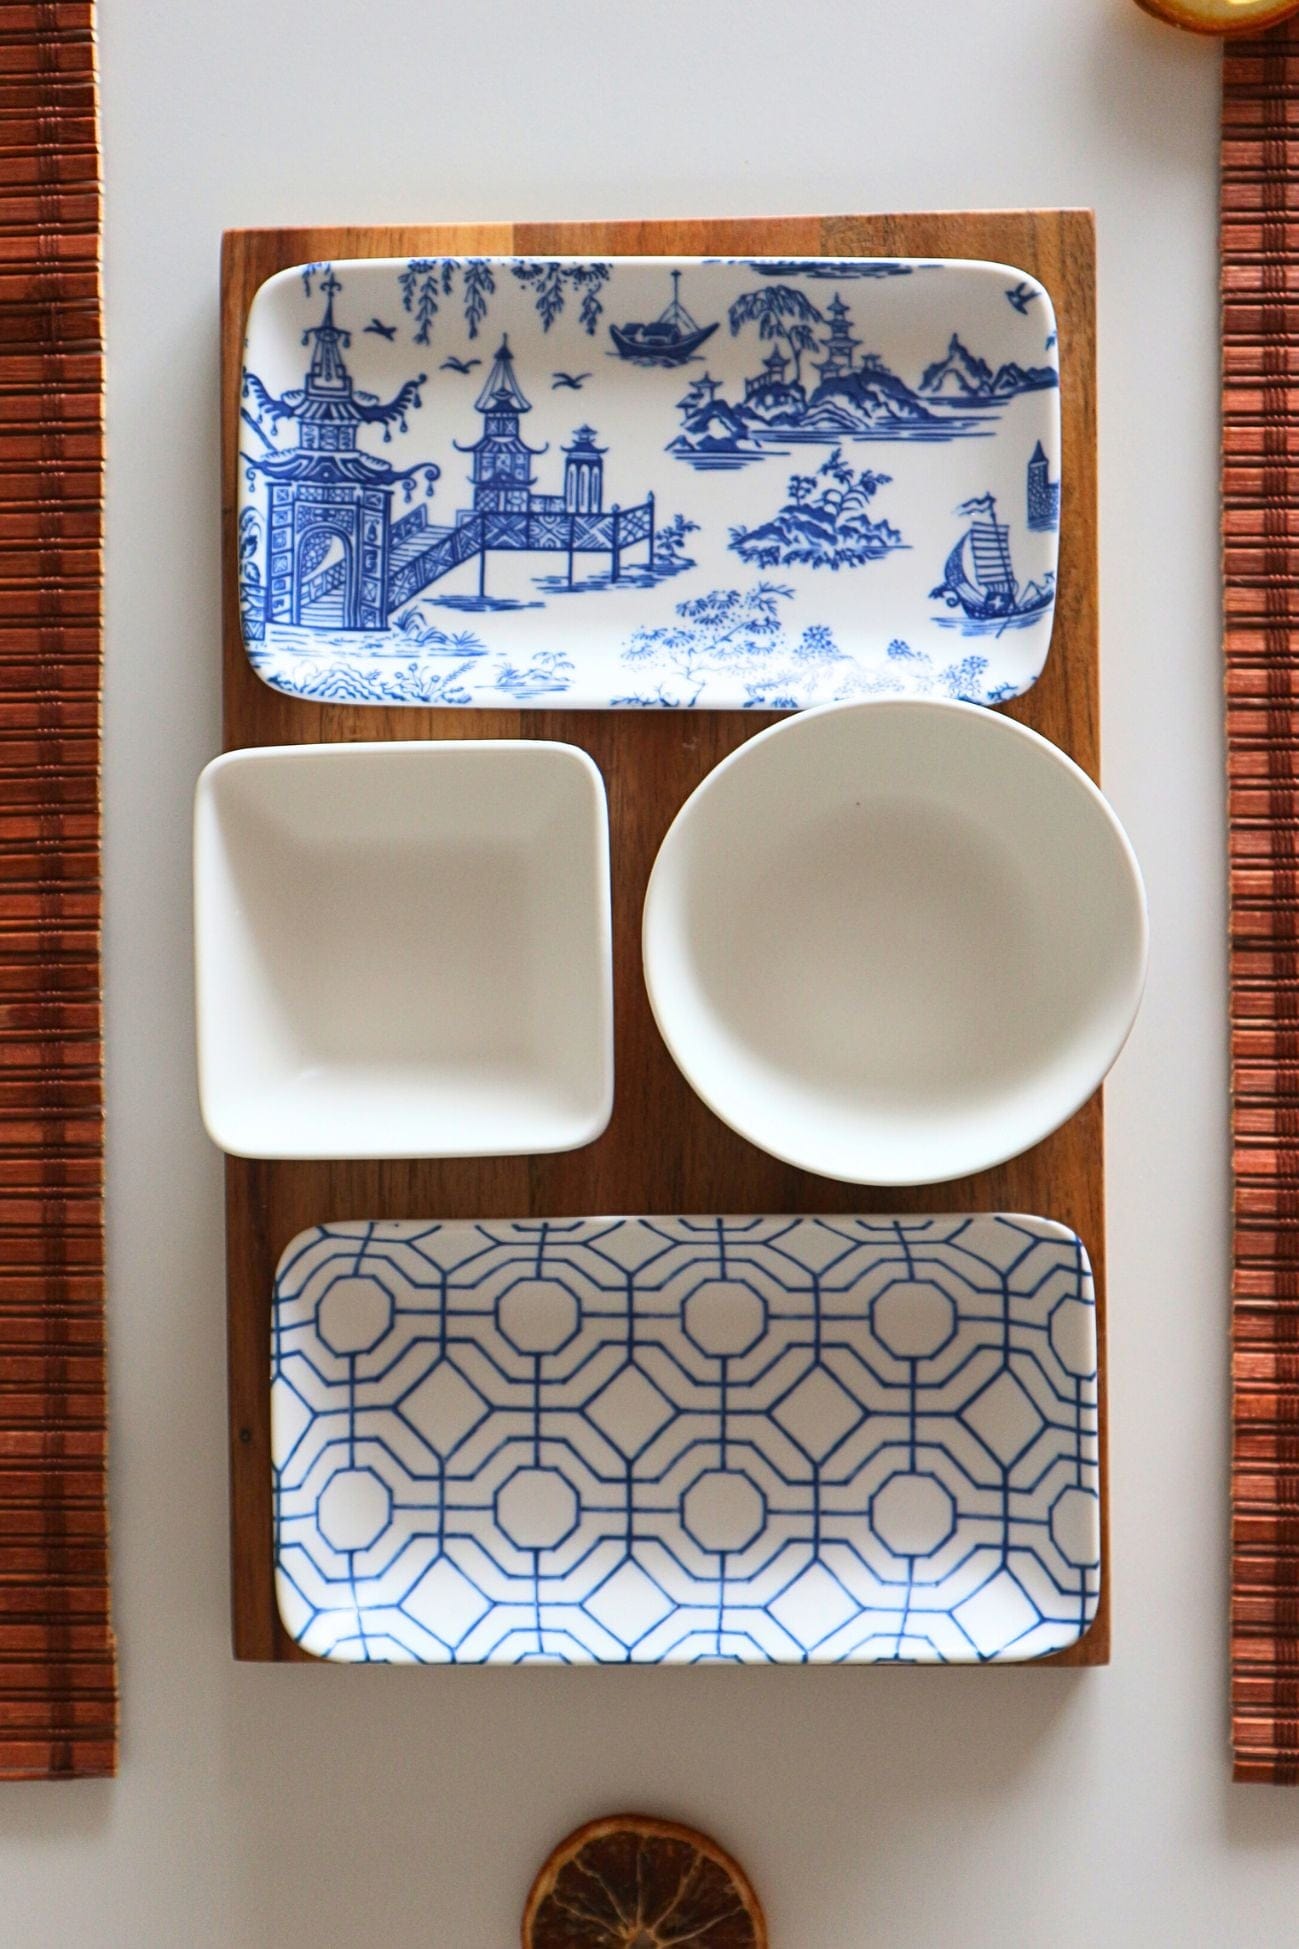 Item International Shizu Shizu - Set da aperitivo in porcellana e acacia in stile orientale | Item International